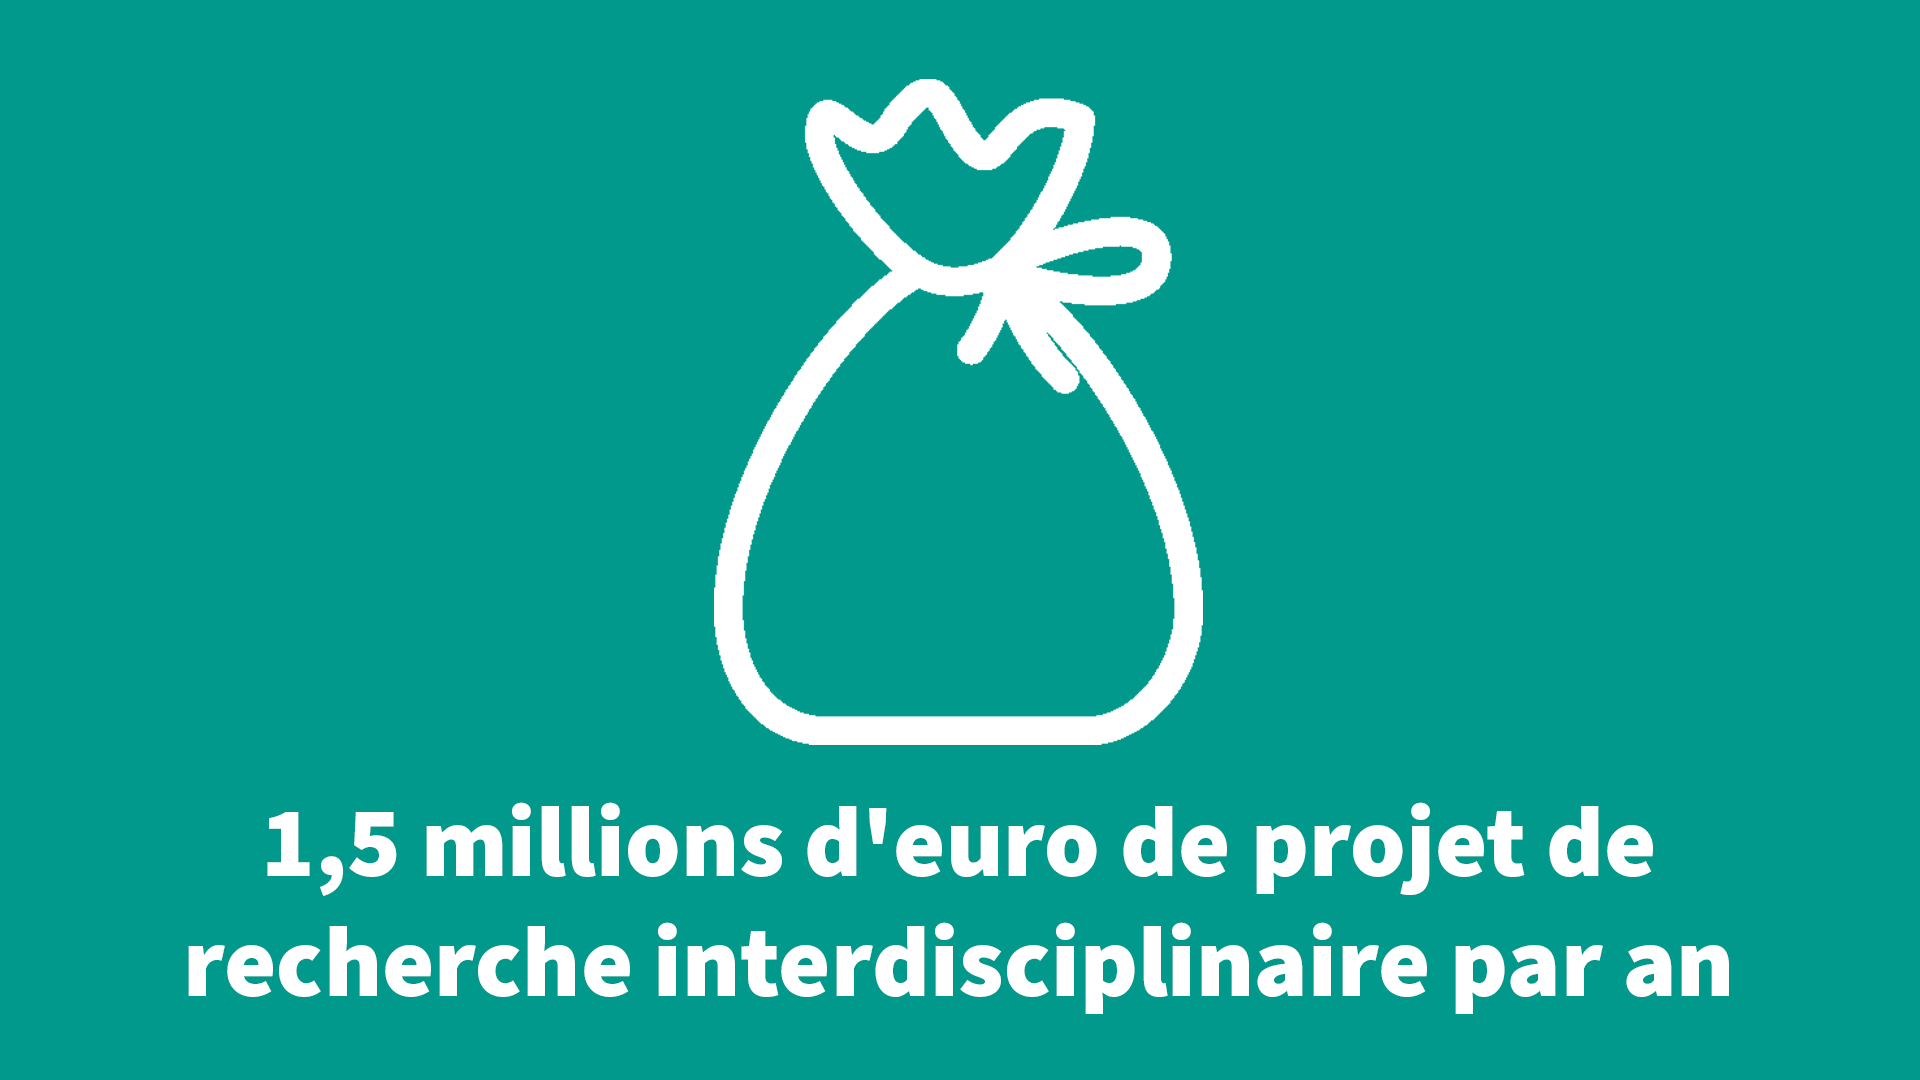 1,5 millions d'euro de projet de recherche interdisciplinaire par an